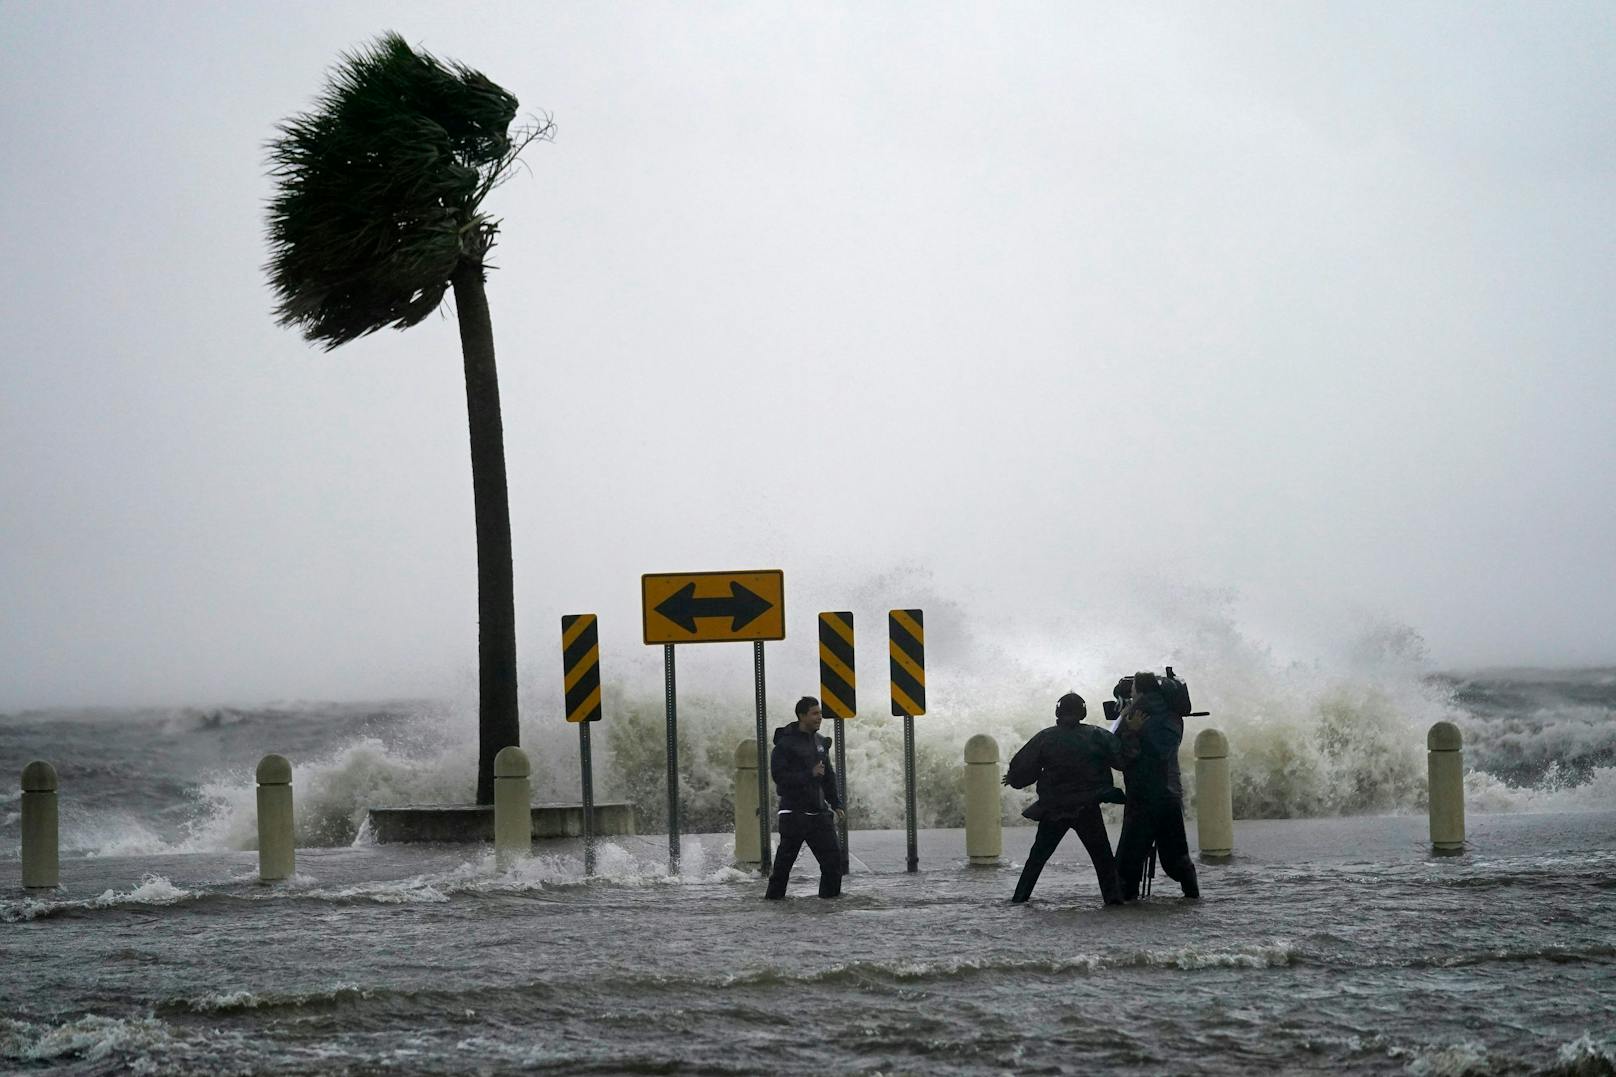 Der Hurrikan sorgte an der Küste für meterhohe Wellen...